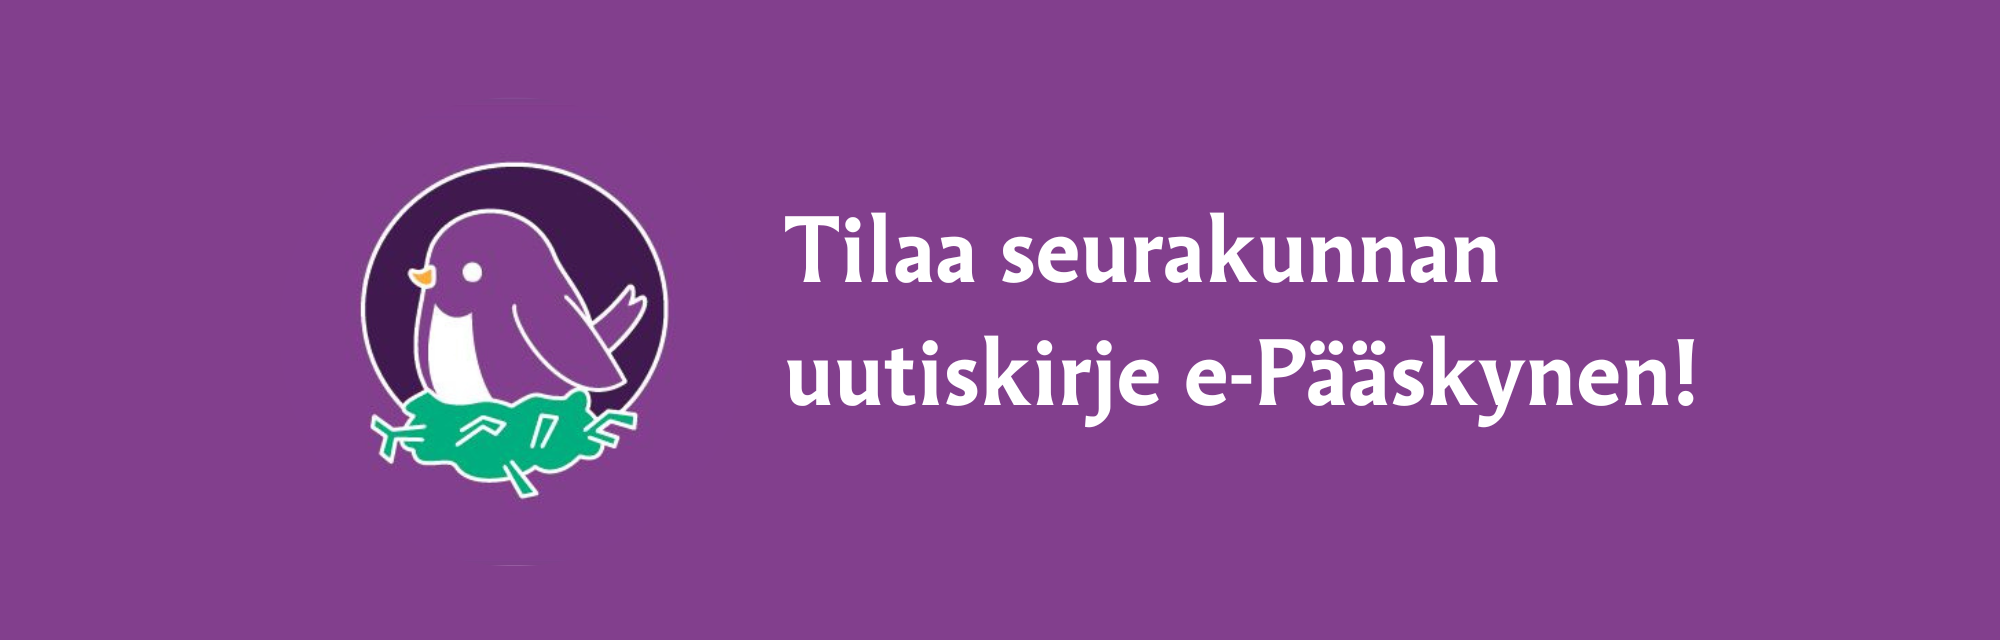 Rovaniemen seurakunnan e-uutiskirje Pääskysen logo violetilla pohjalla. Teksti: Tilaa seurakunnan uutiskirj...